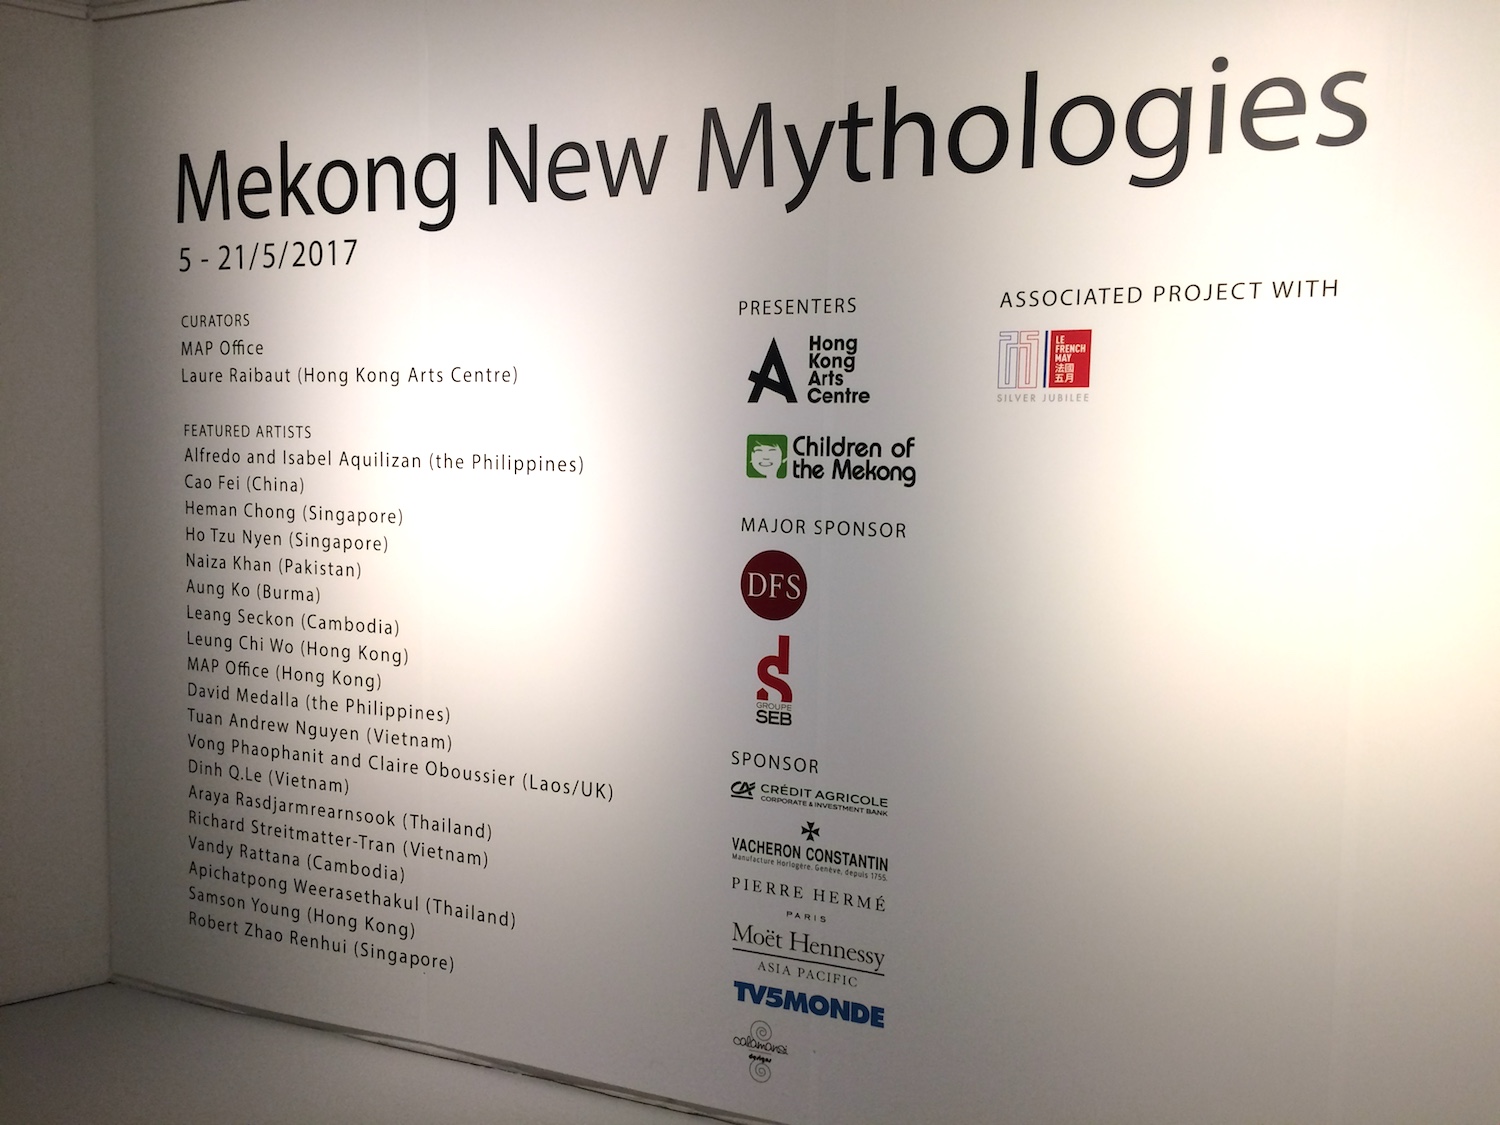 The Mekong - New Mythologies